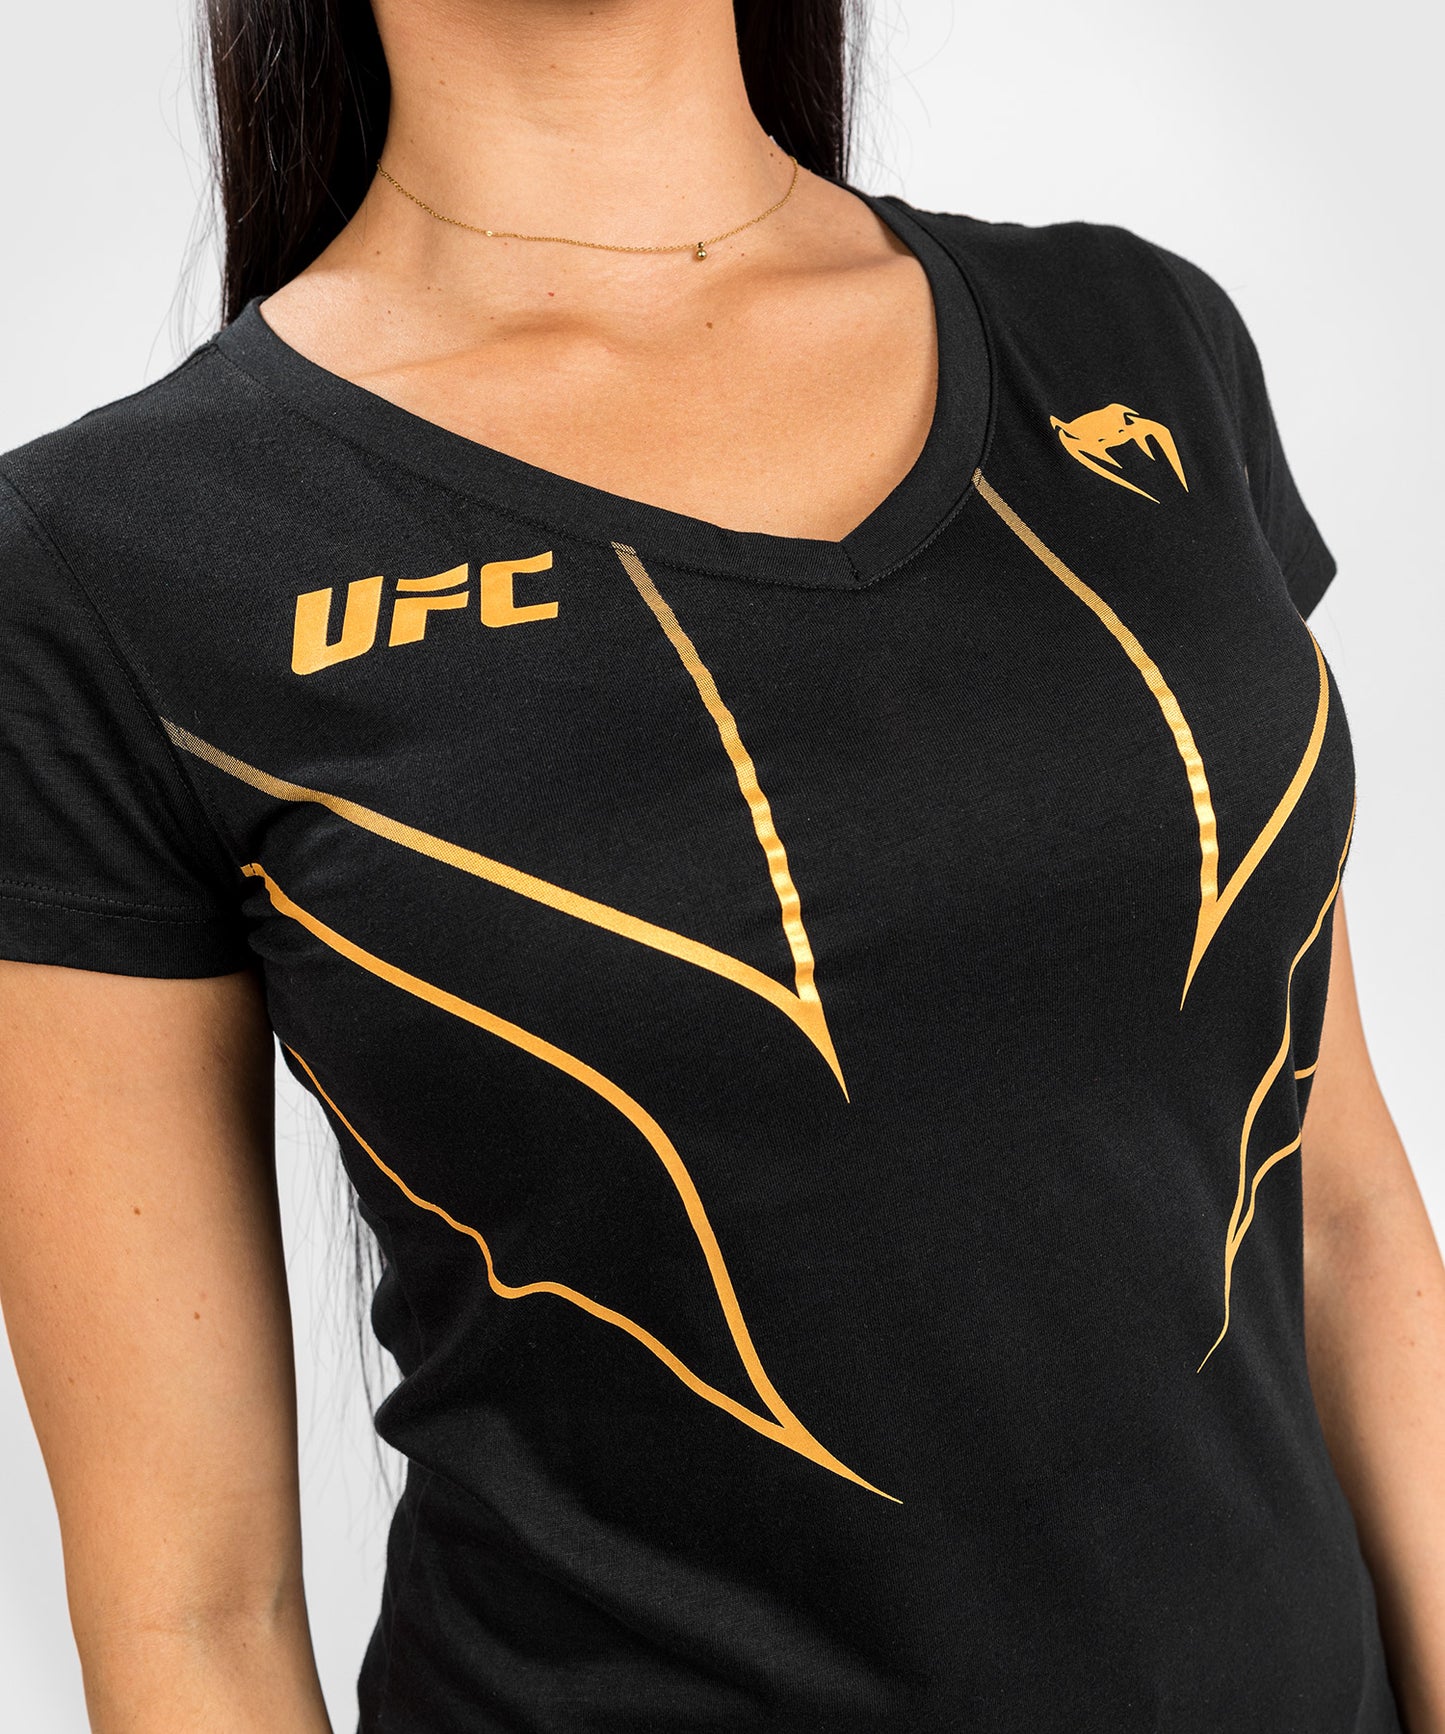 Camiseta Ufc Venum Personalizada Auténtica Fight Night 2.0 Mujer - Negra, Camisetas Dry Tech